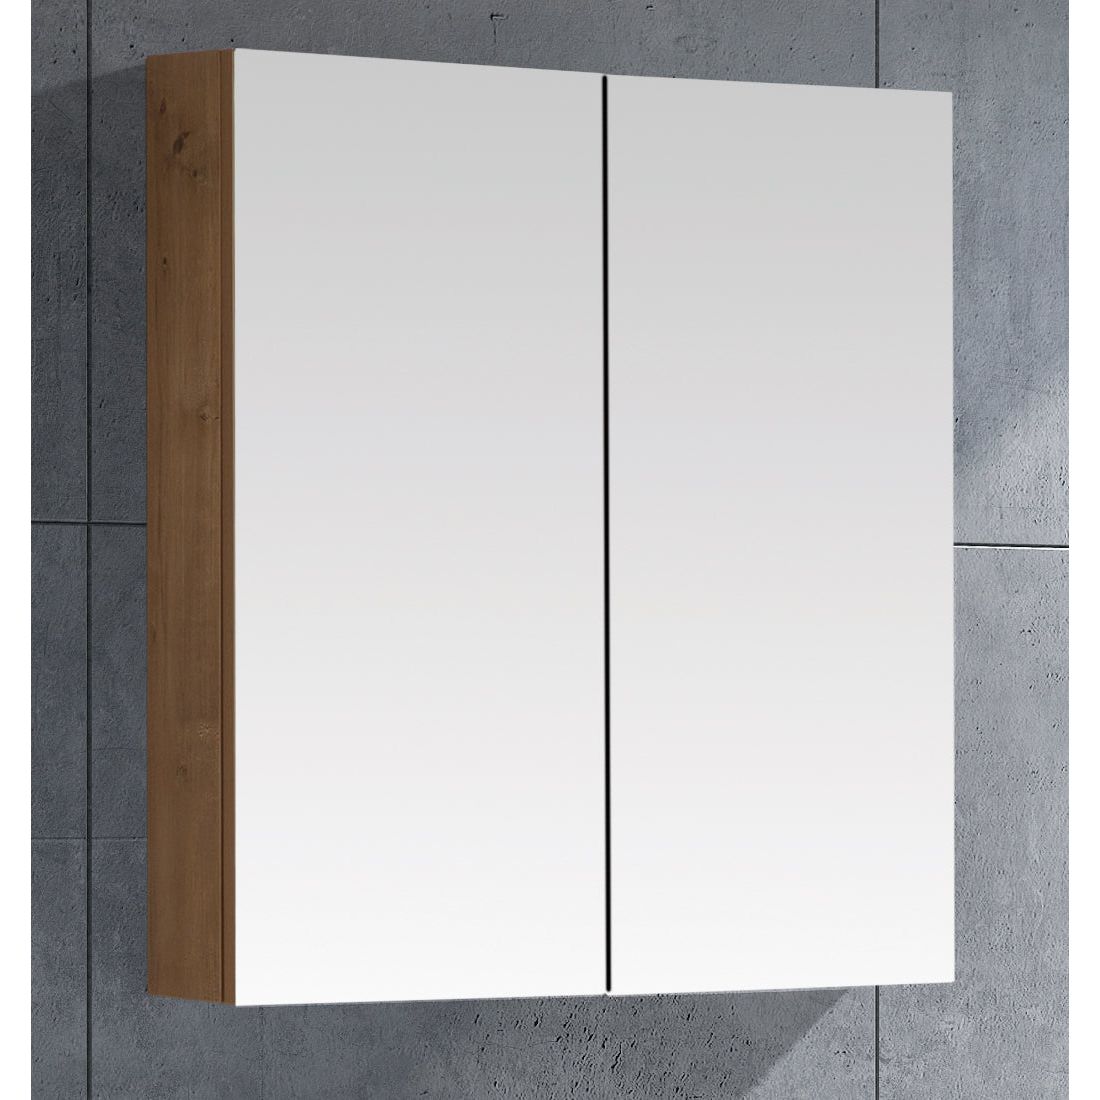 MELA - PORTER 900 Snafell Mirror Cabinet with Doors